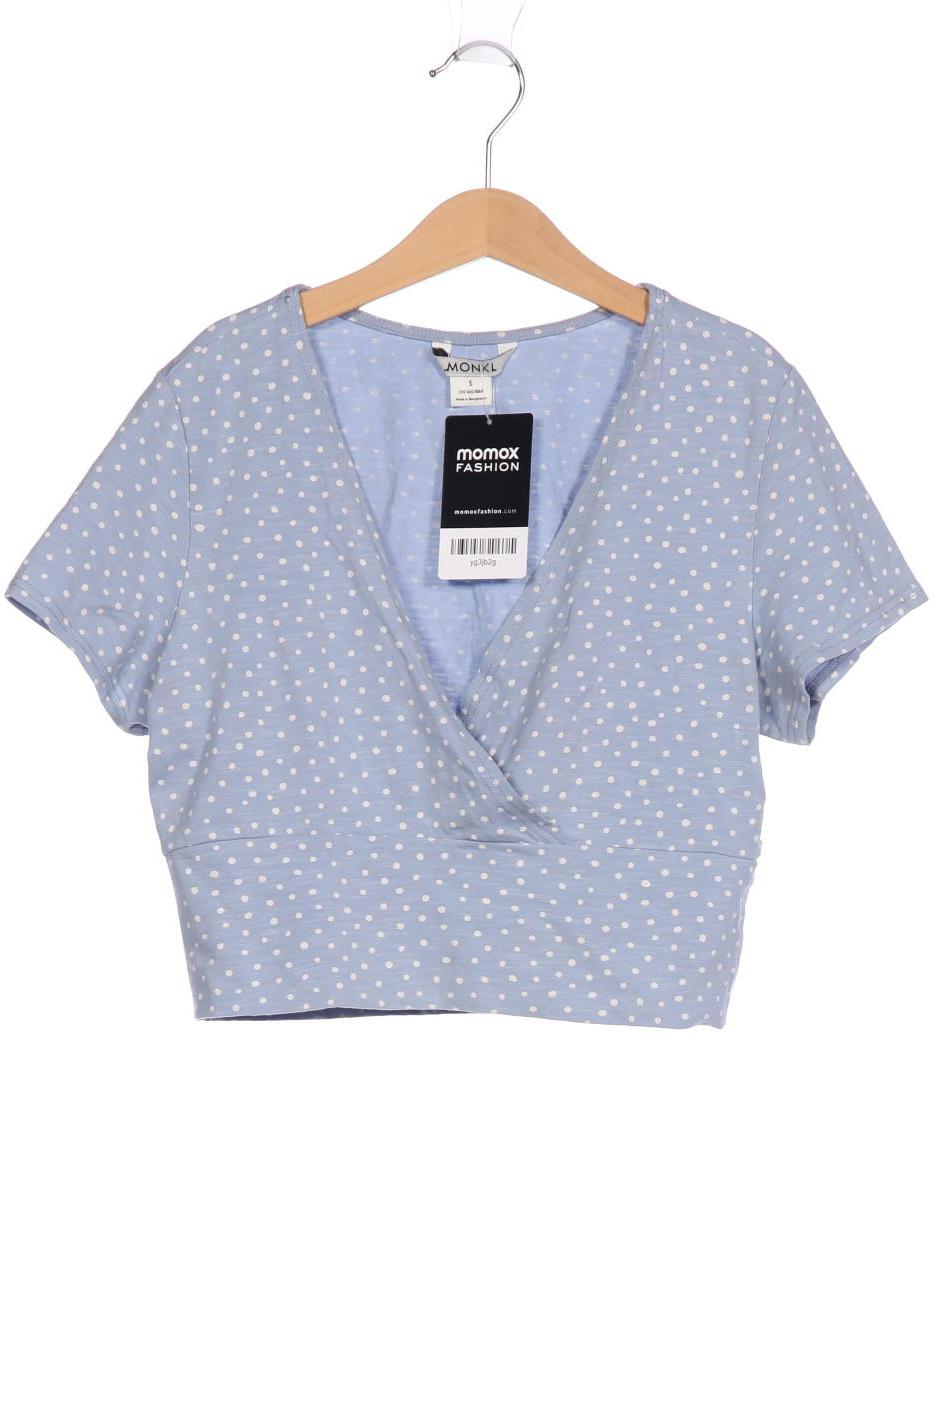 Monki Damen T-Shirt, hellblau, Gr. 36 von Monki